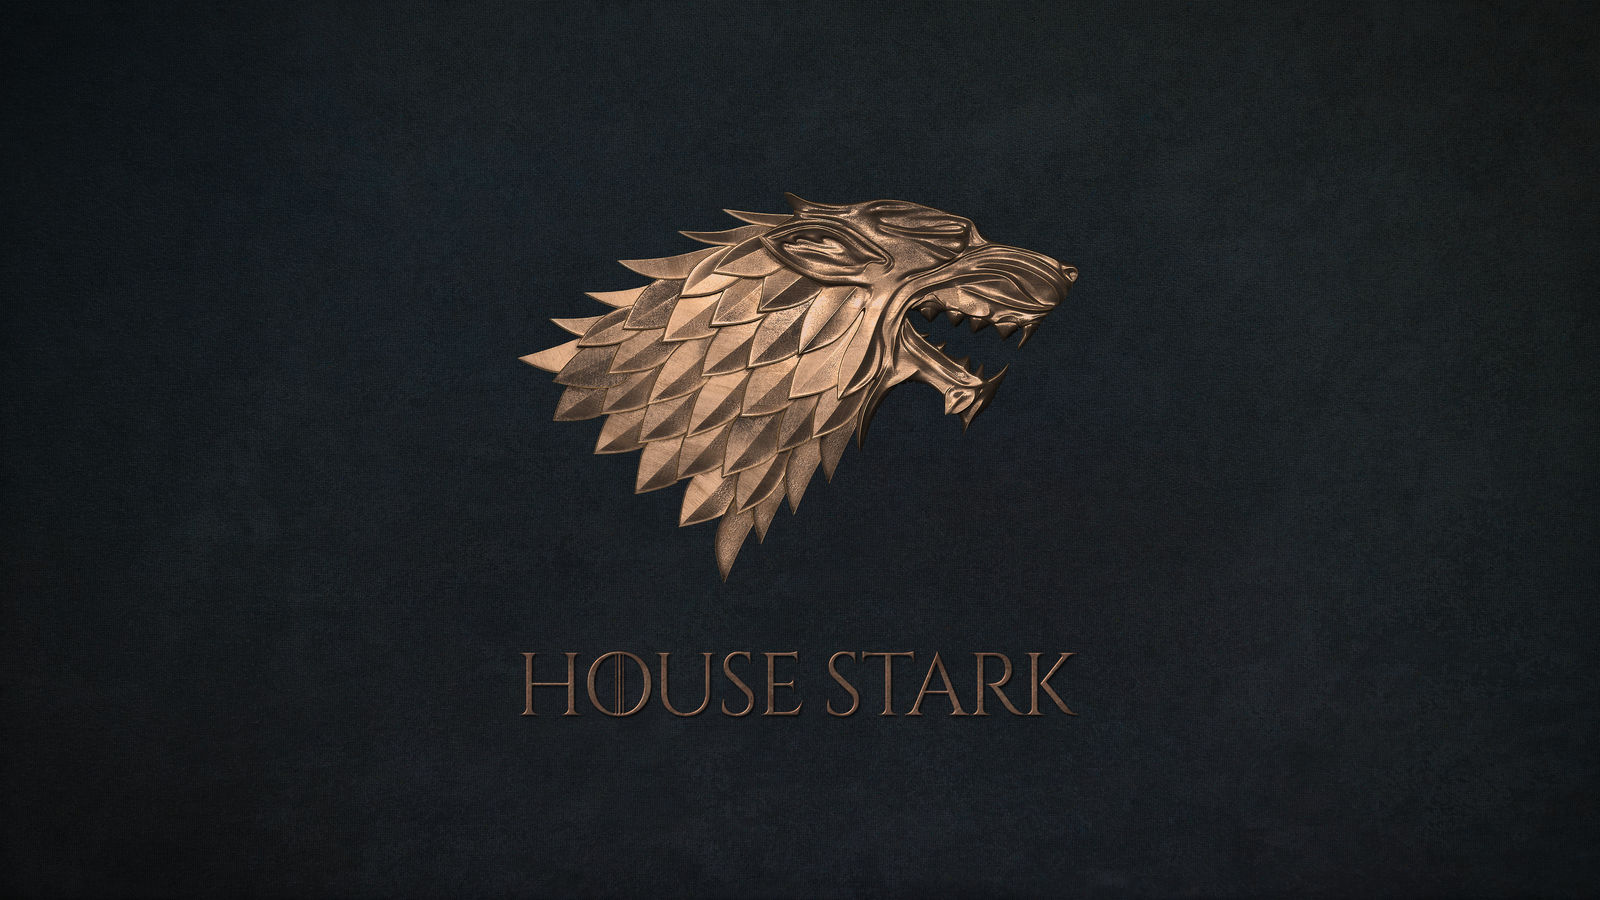 Game of Thrones - 4k Wallpaper - House Stark by AKSensei on DeviantArt